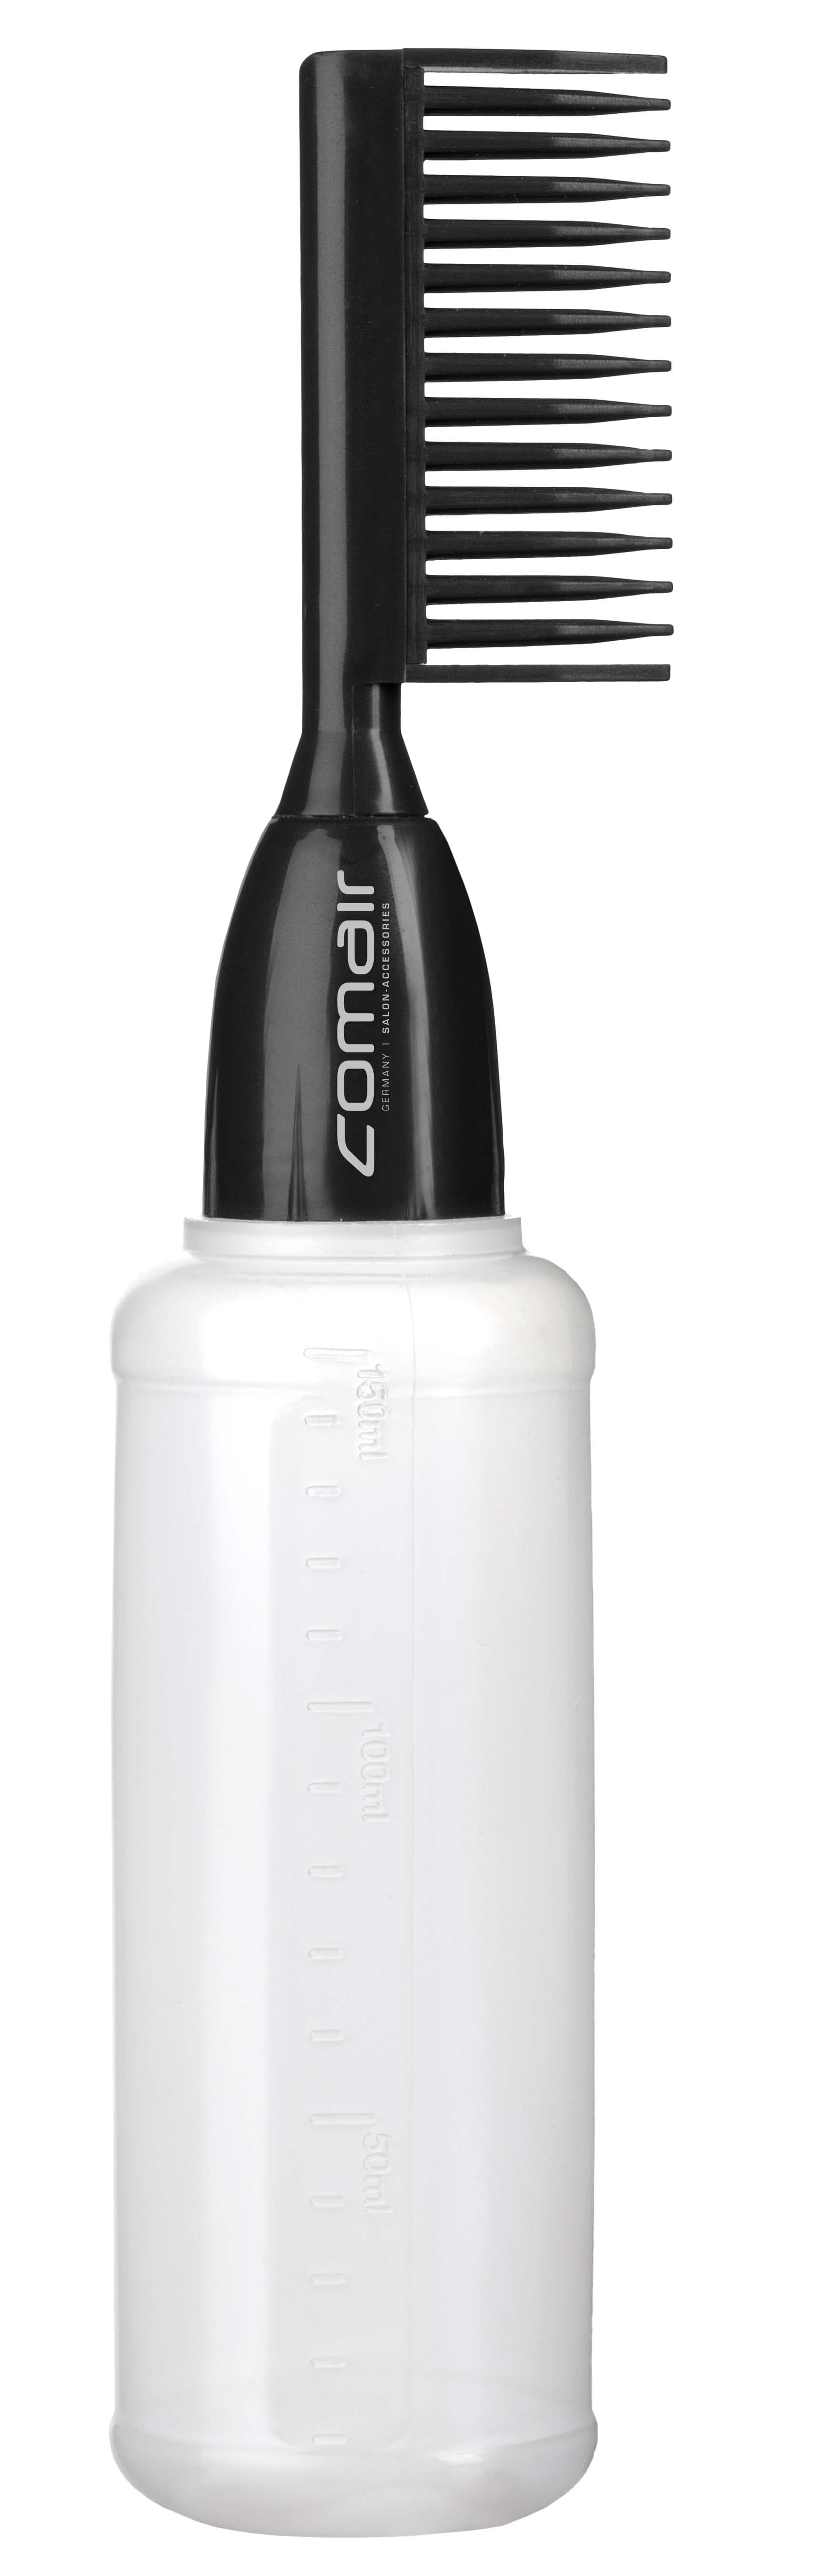 Comair application bottle 7001302 - aplikační láhev s hřebenem pro barvení vlasů